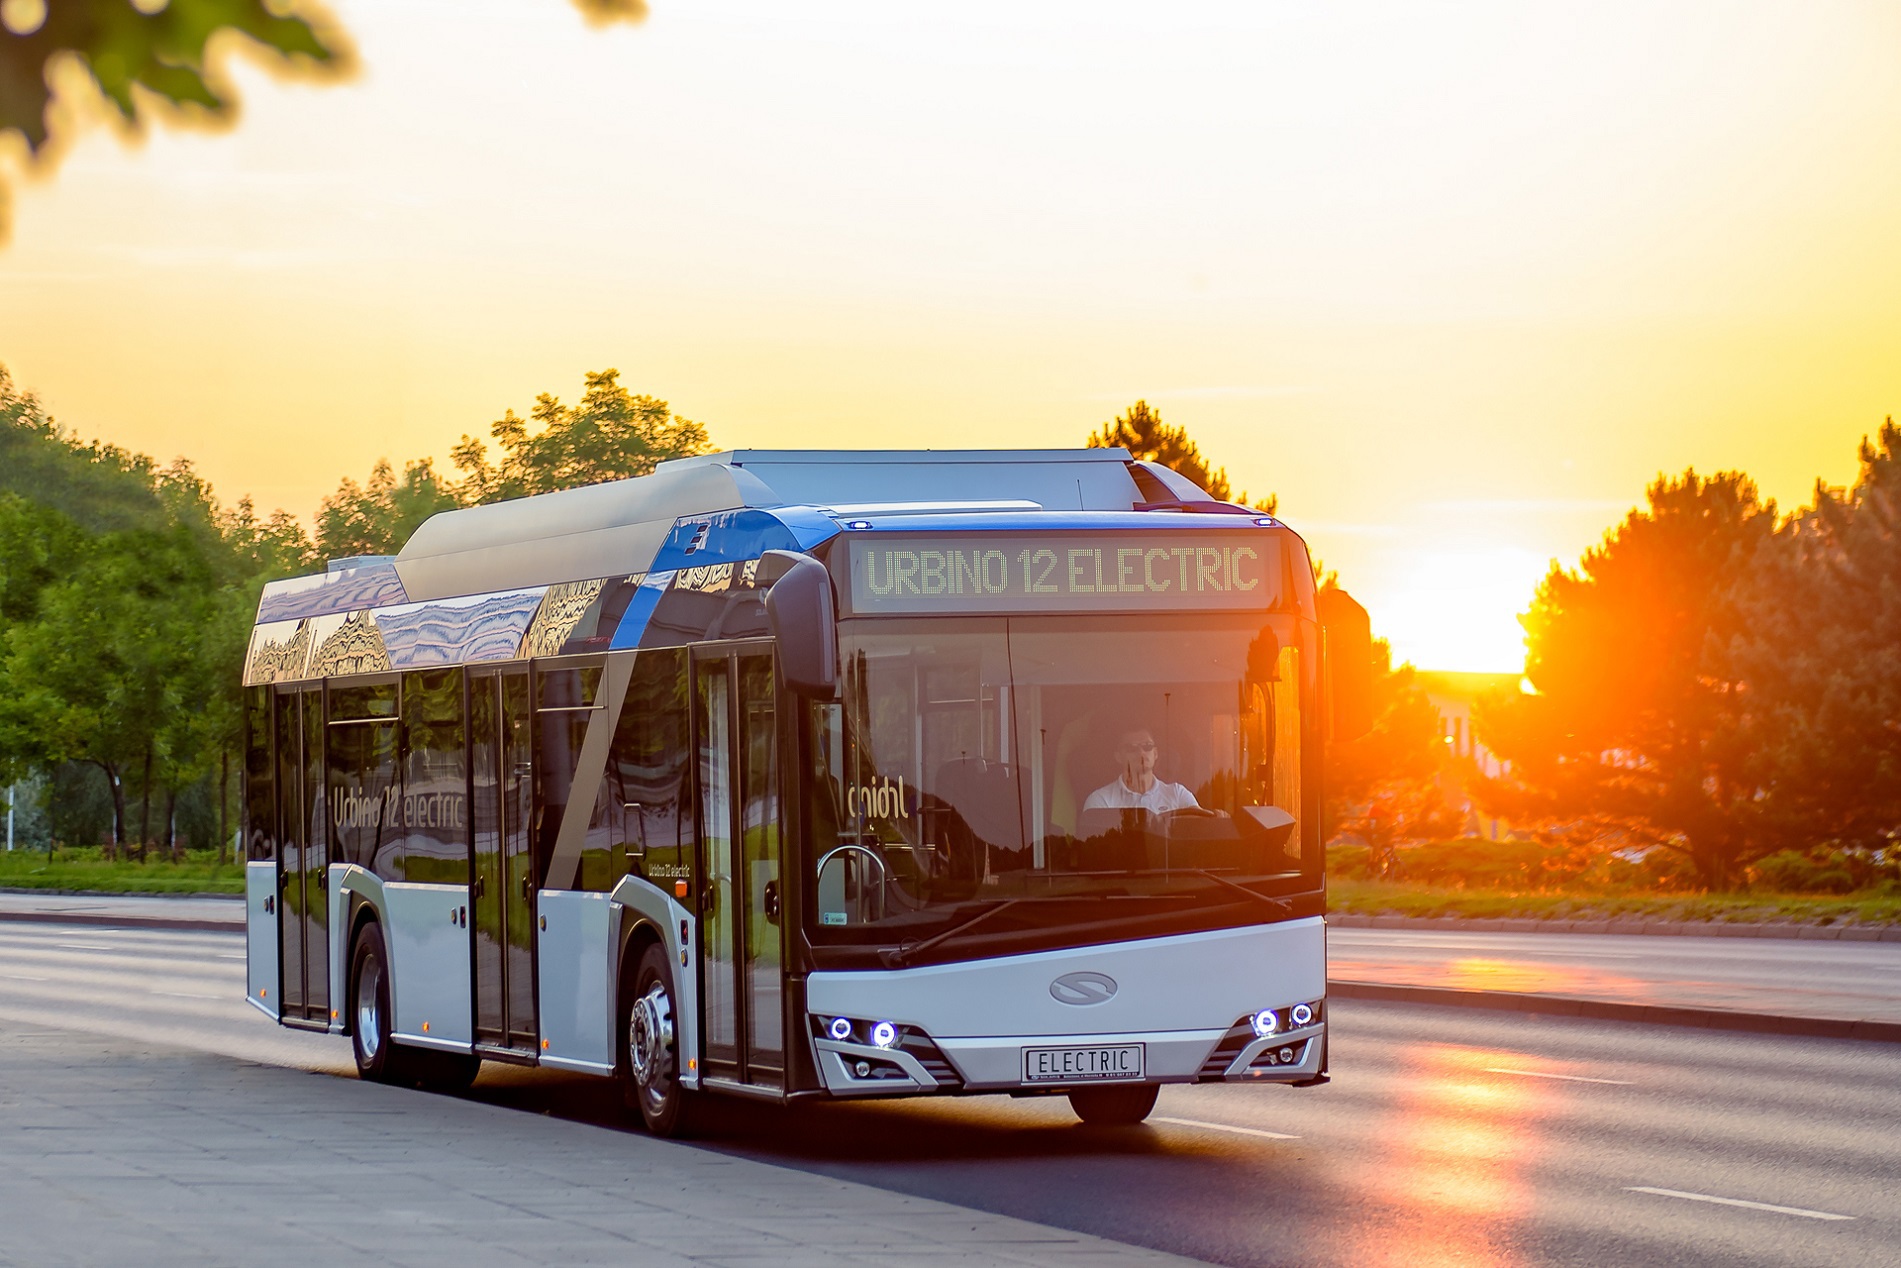 Producătorul polonez Solaris livrează 40 de autobuze electrice primăriei Piteşti, contract de peste 100 mil. lei